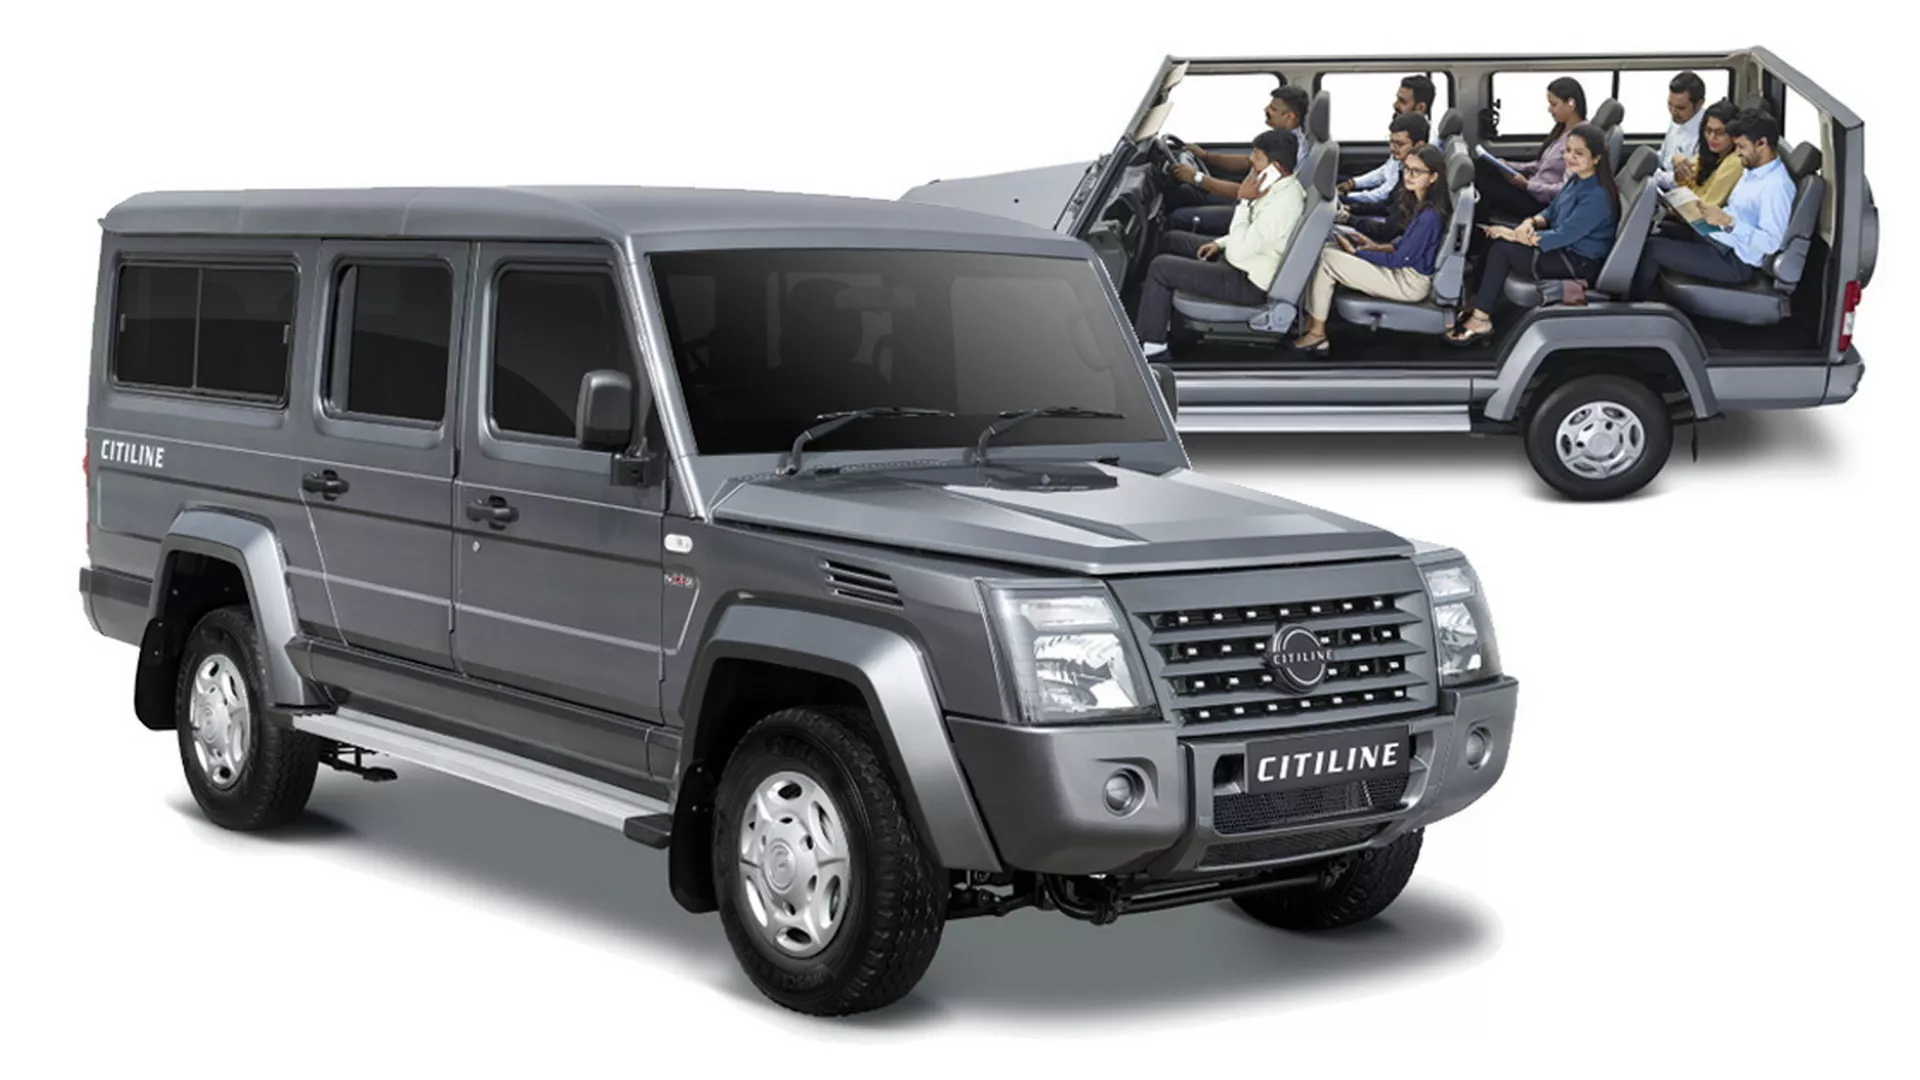 انطلاق SUV هندية عملاقة بـ 10 مقاعد وتصميم مستوحى من سيارات جي كلاس القديمة 1